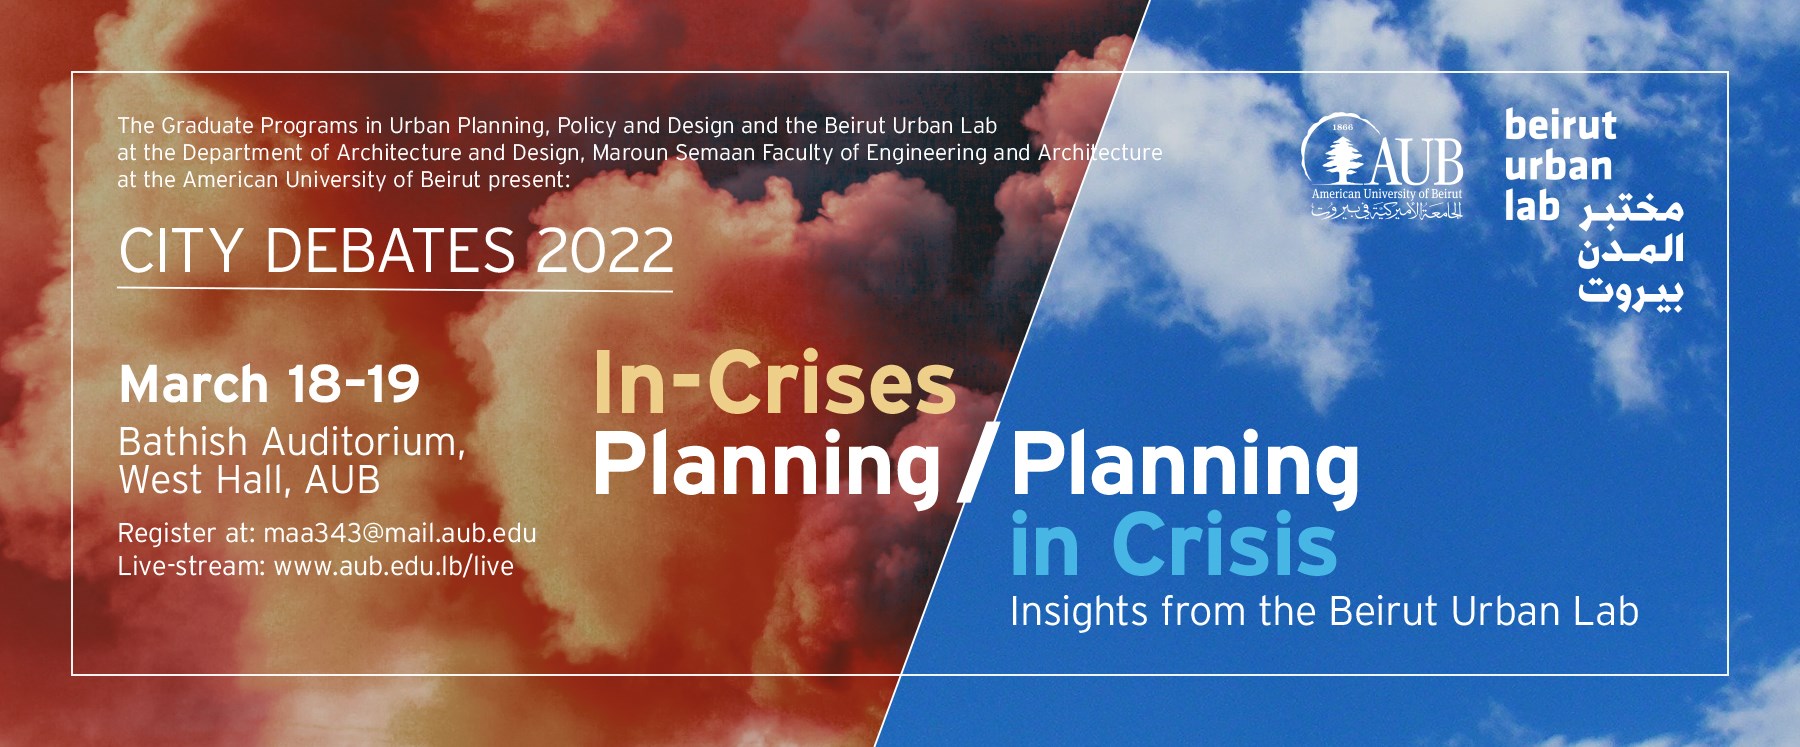 City Debates 2022: In-Crises Planning/Planning in Crisis